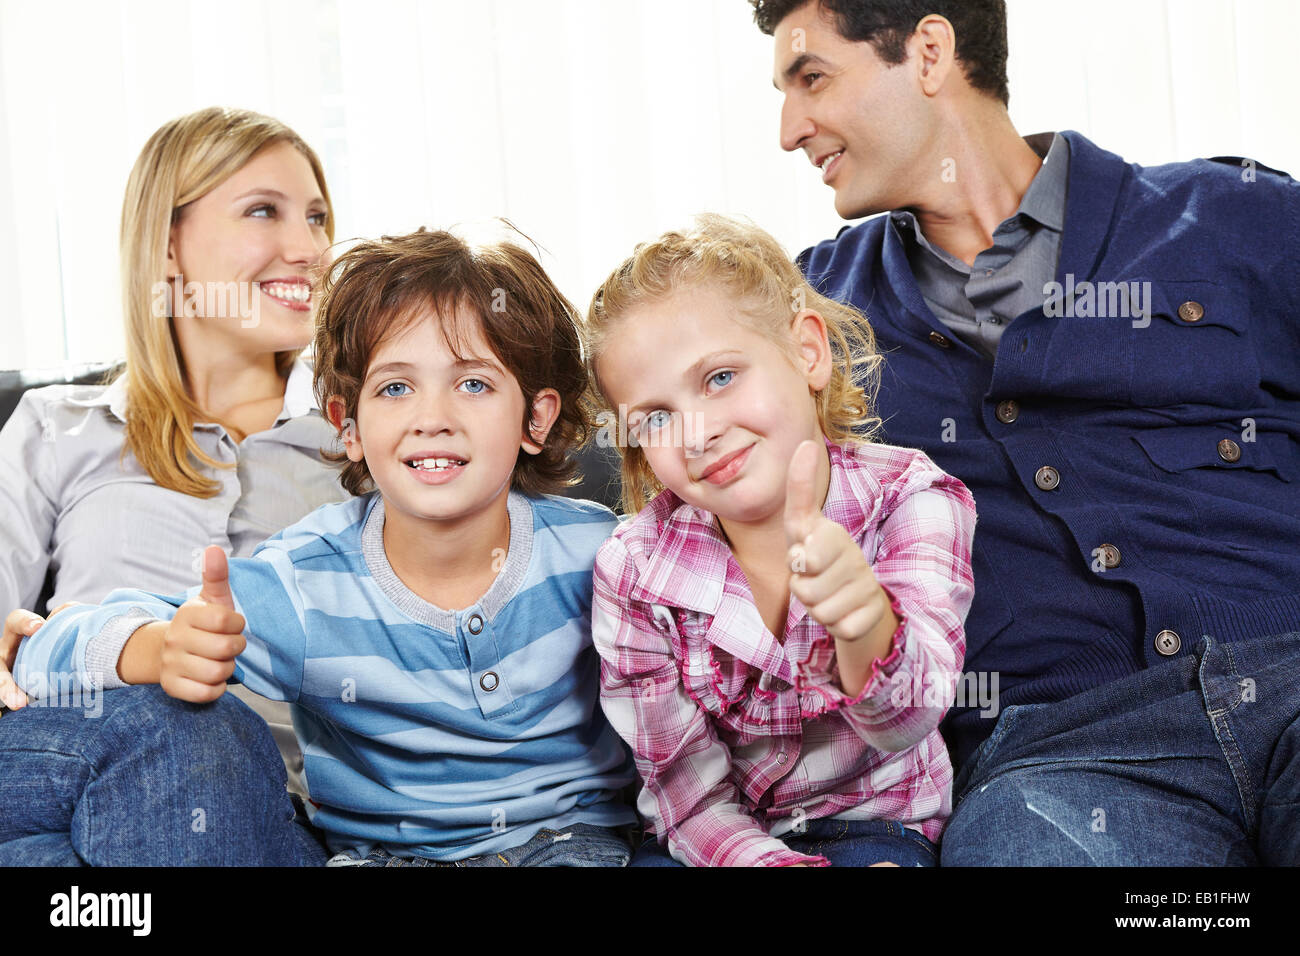 Zwei glückliche Kinder, die Daumen hochhalten, zwischen den Eltern auf dem sofa Stockfoto